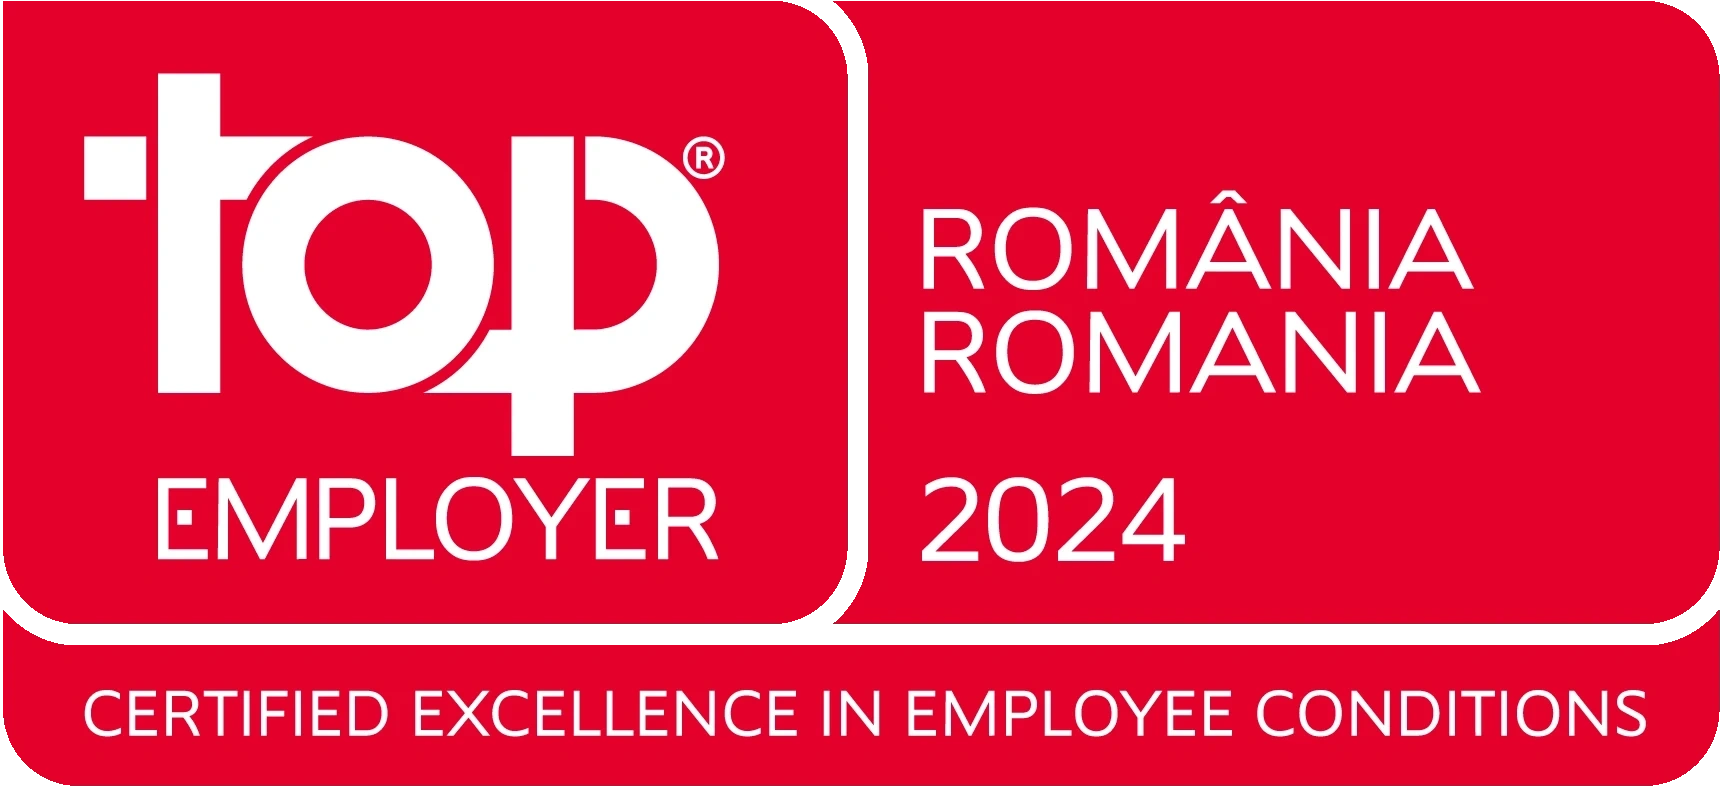 Global Top Employer in Romania